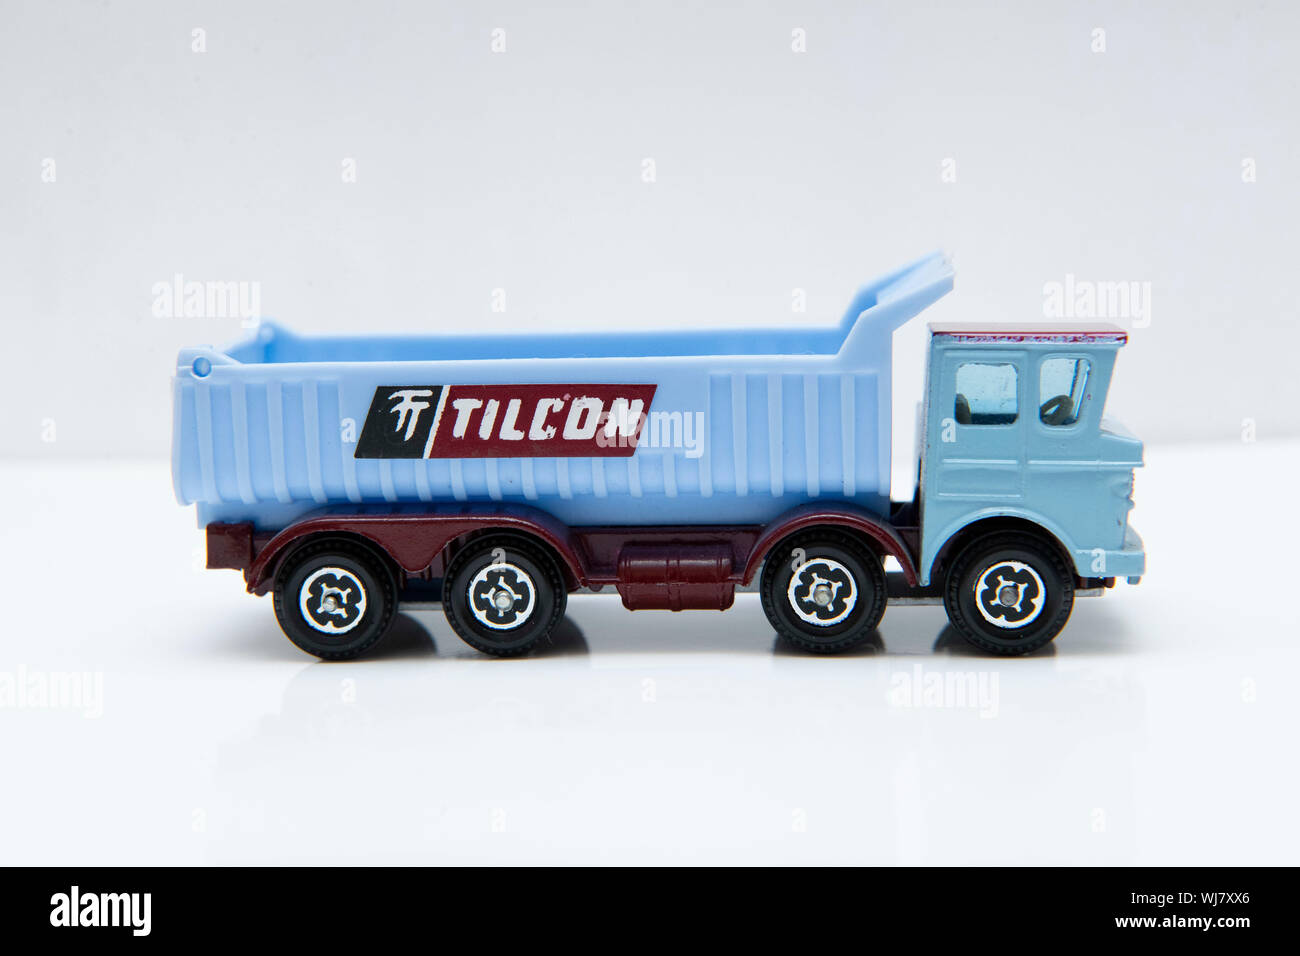 Lone Star Impy poden Half Cab 'Alimentación' Tilcon constructores Camión Volquete camión de juguete modelo Foto de stock